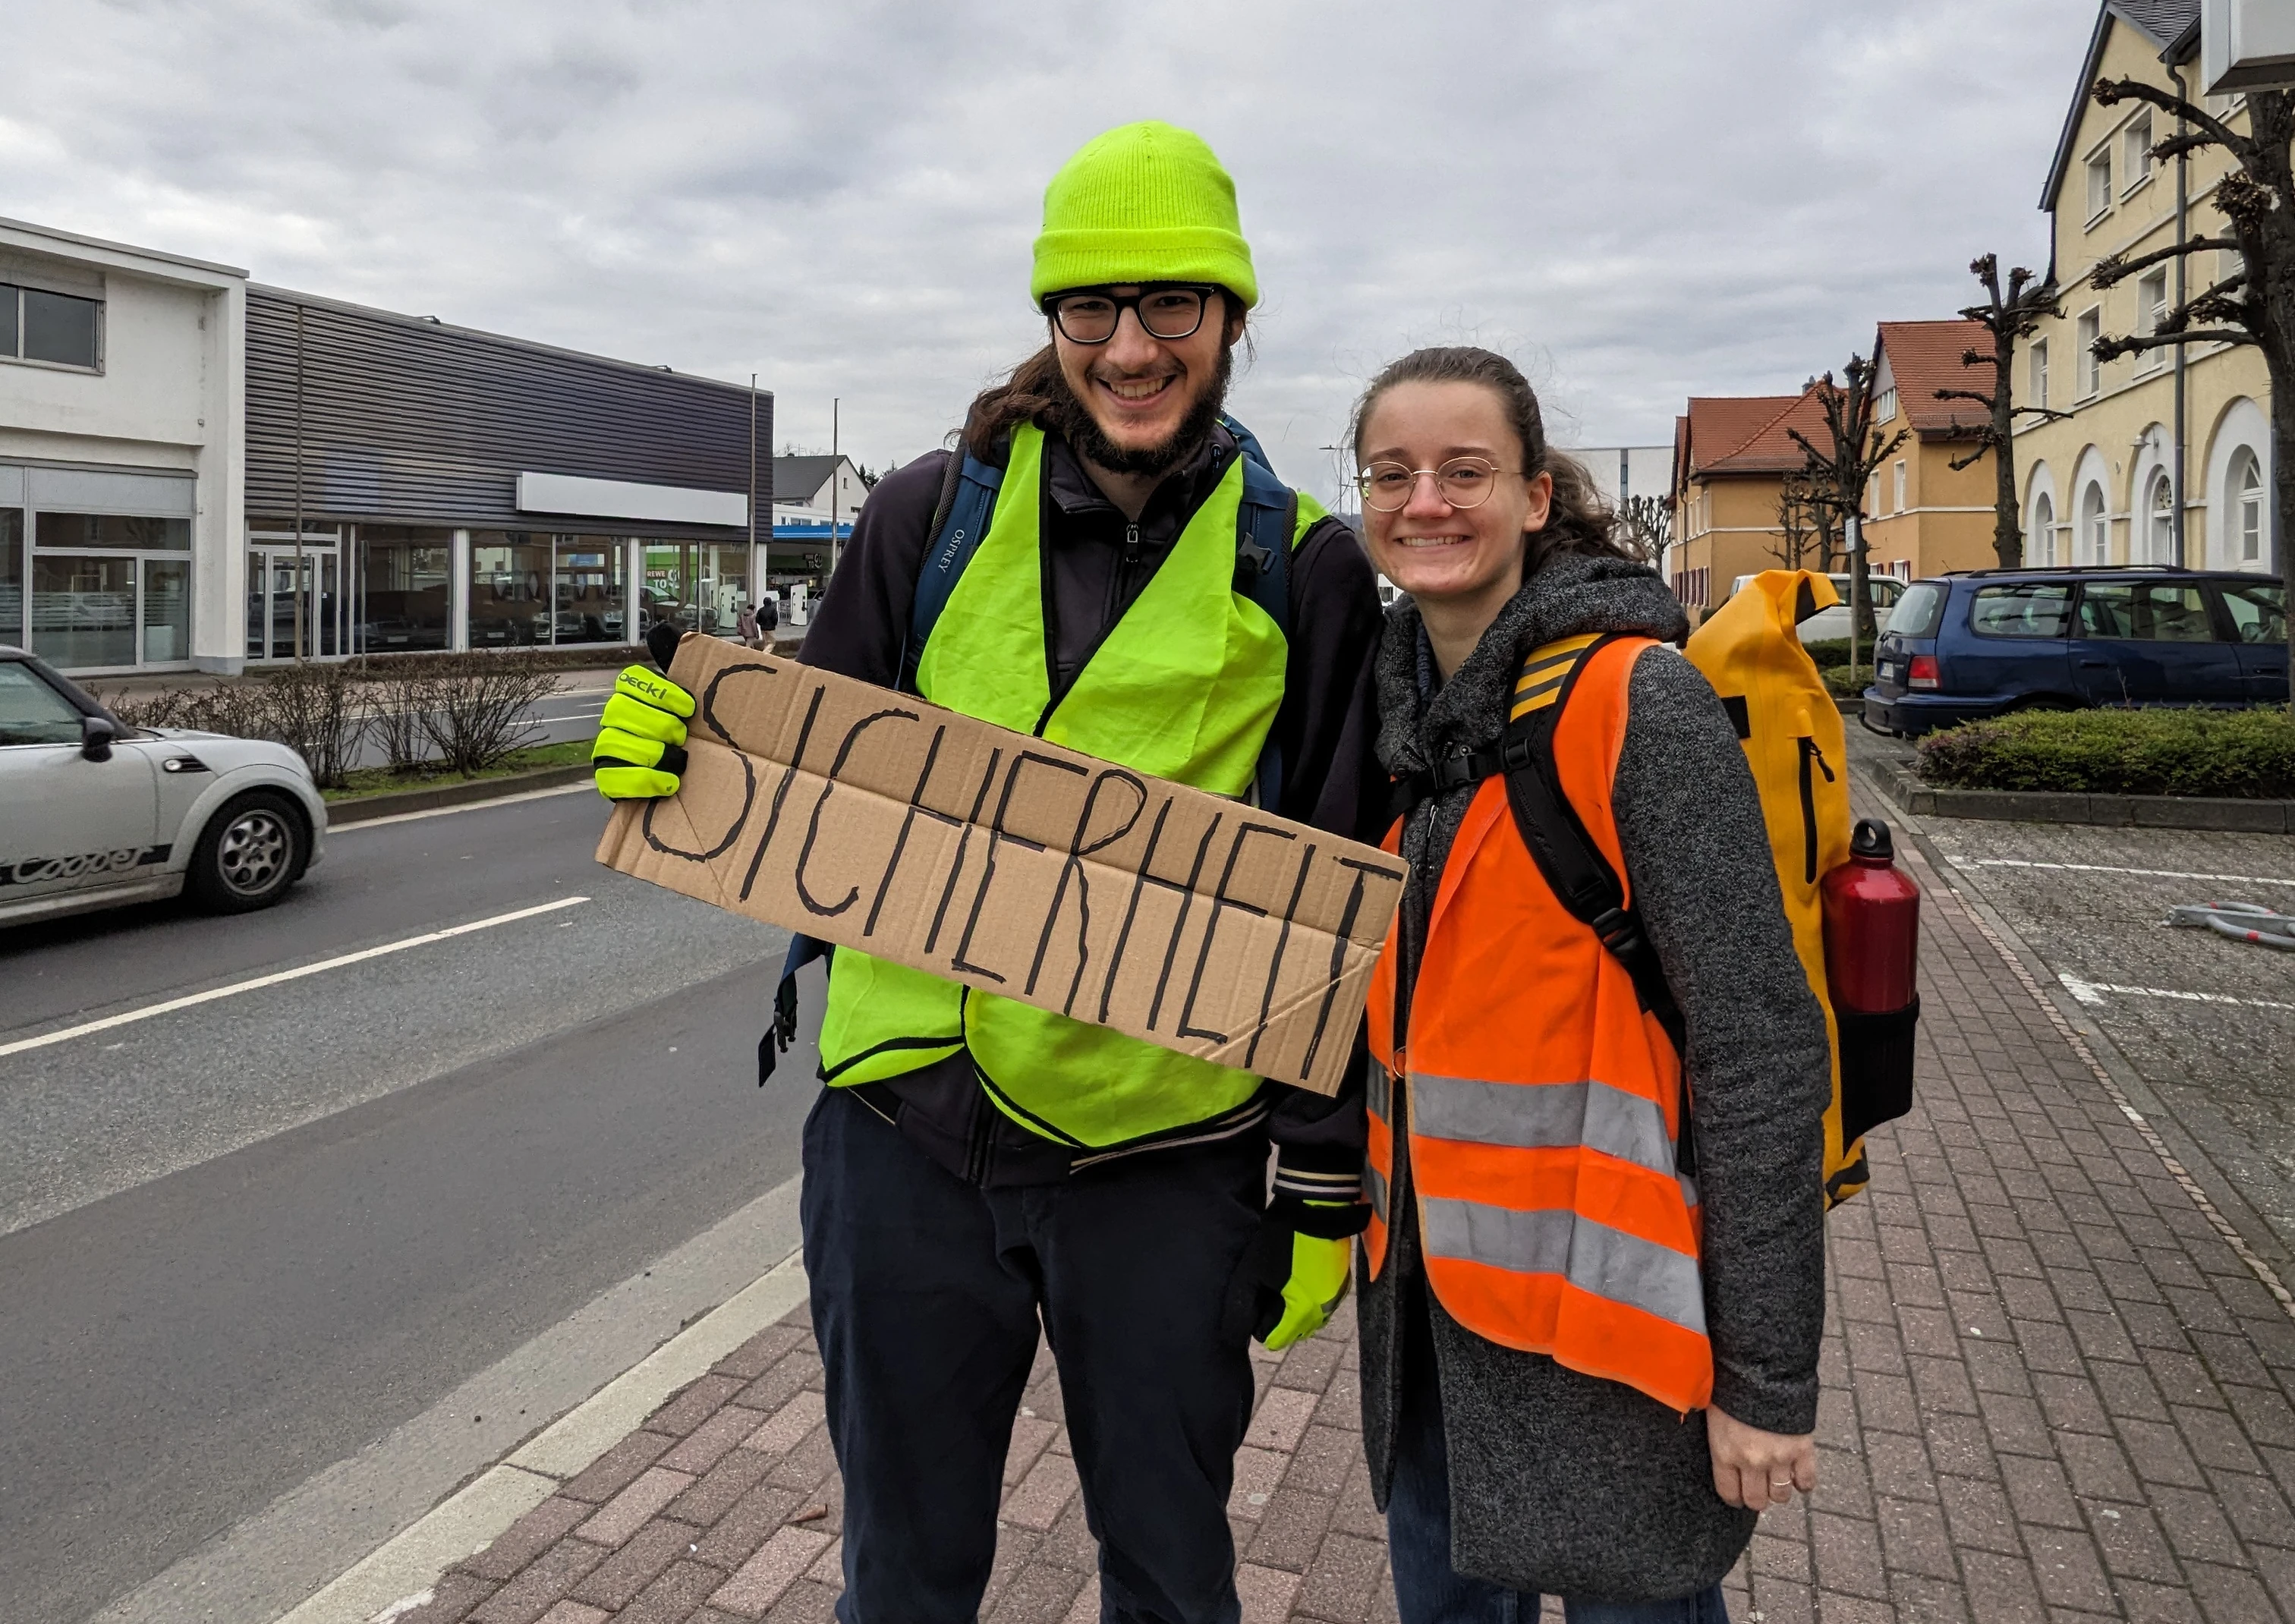 Zwei Menschen in Warnwesten stehen am Straßenrand und halten ein handgeschriebenes Schild mit der Aufschrift "Sicherheit"